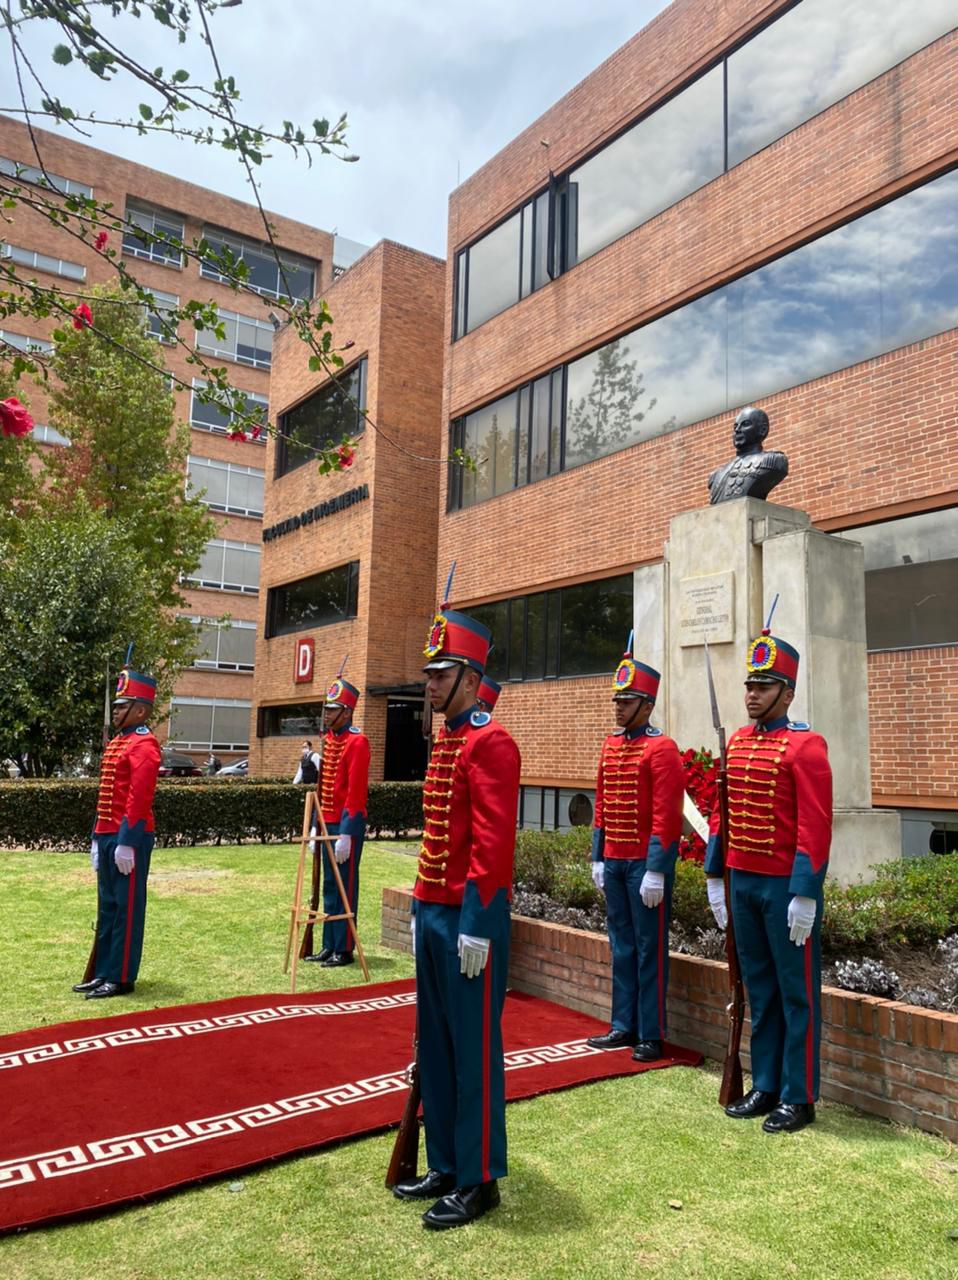 Tomó posesión el nuevo rector de la Universidad Militar Nueva Granada